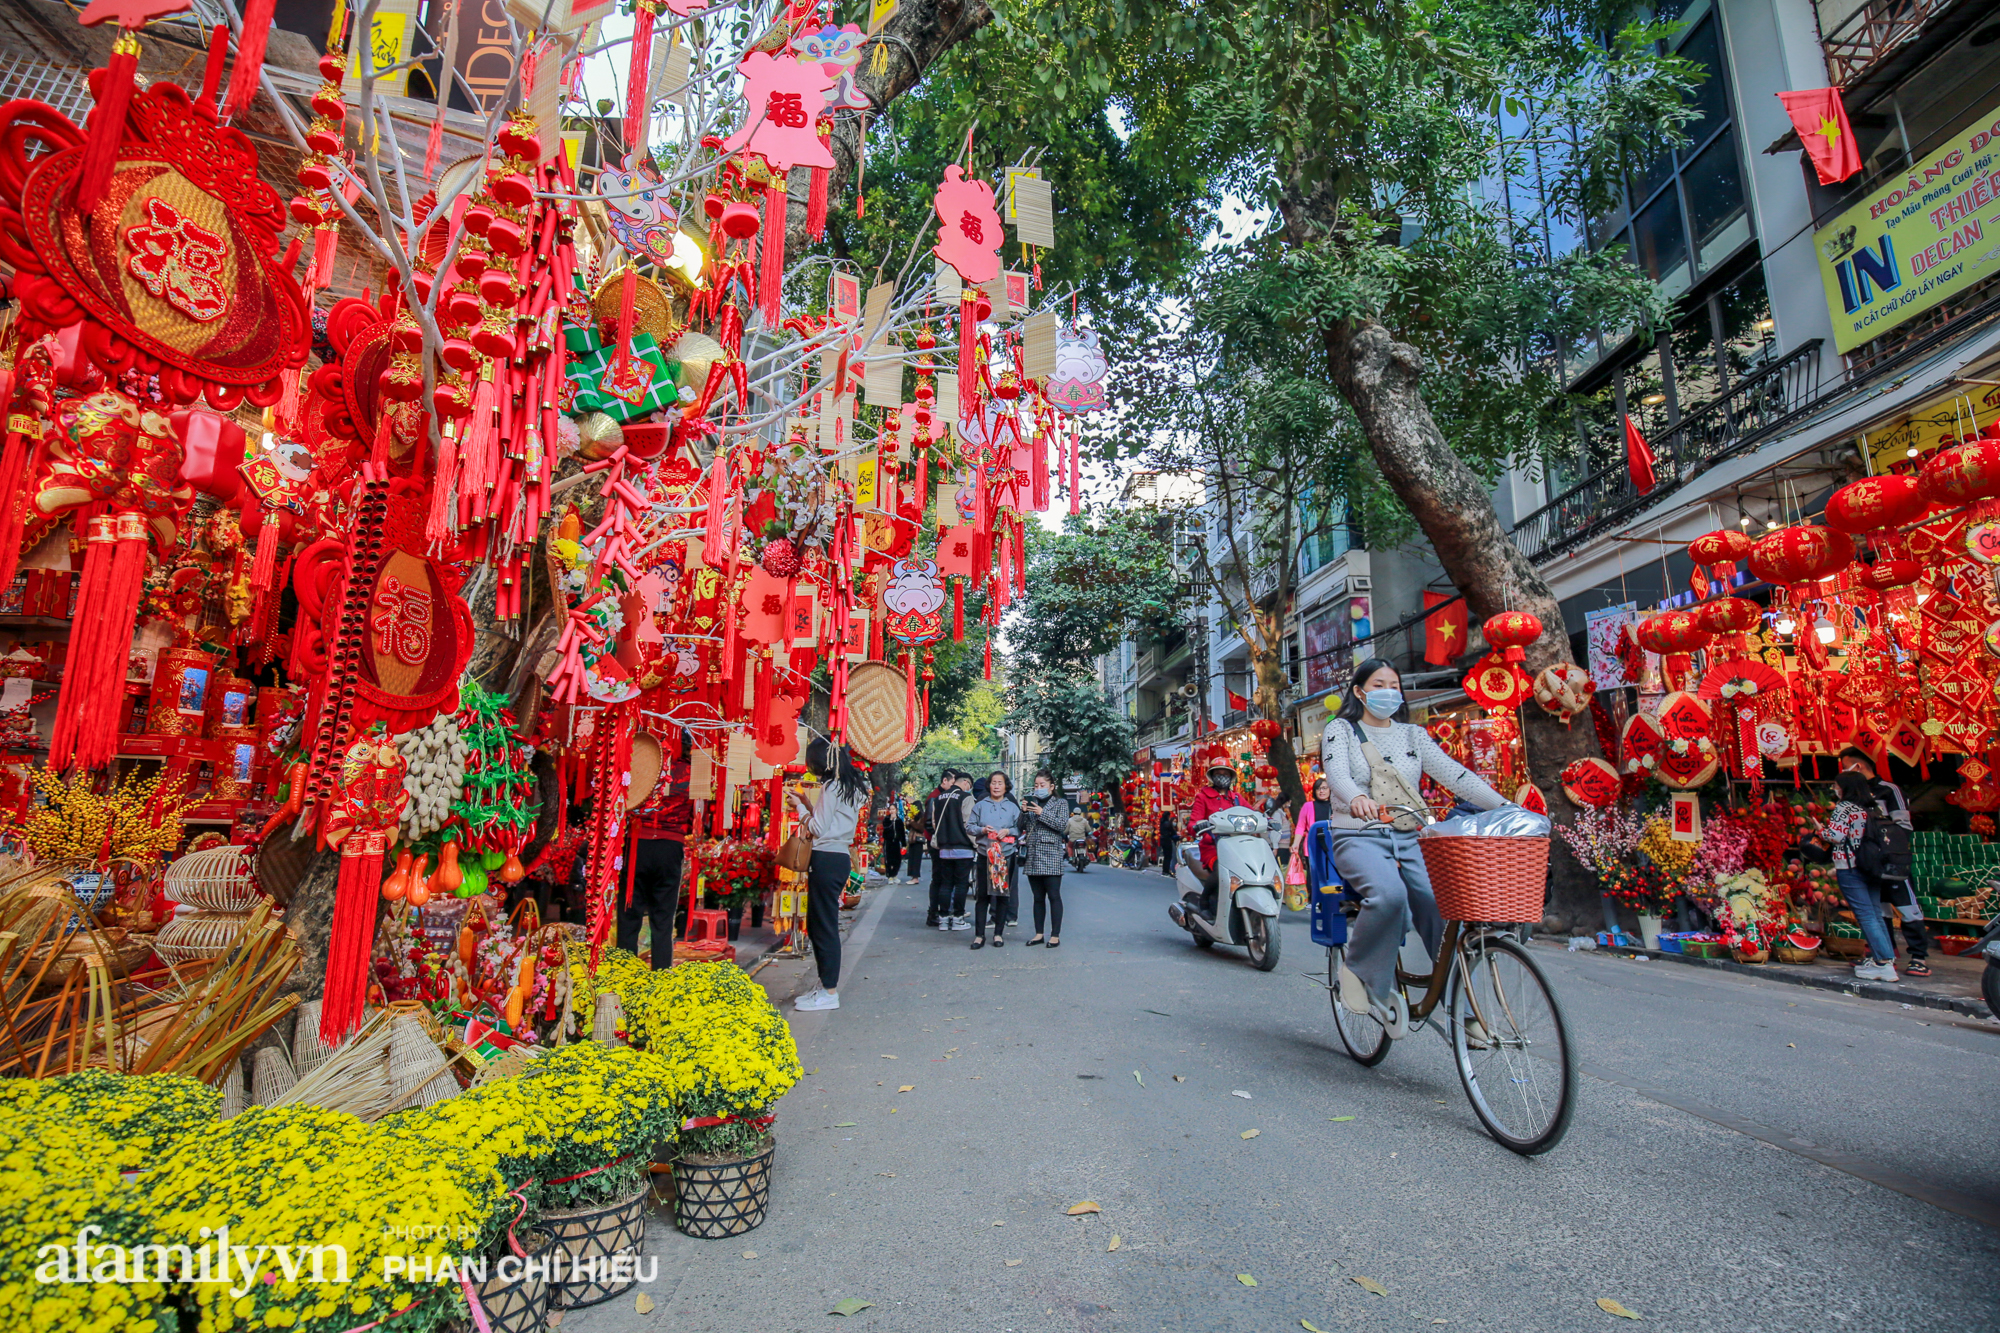 Hàng Mã là điểm đến nổi tiếng của Hà Nội trong dịp Tết. Hãy tham quan và chiêm ngưỡng những sản phẩm độc đáo, mang đậm bản sắc văn hóa của Việt Nam tại Hàng Mã và cảm nhận tinh hoa của Hà Nội trong ngày Tết.